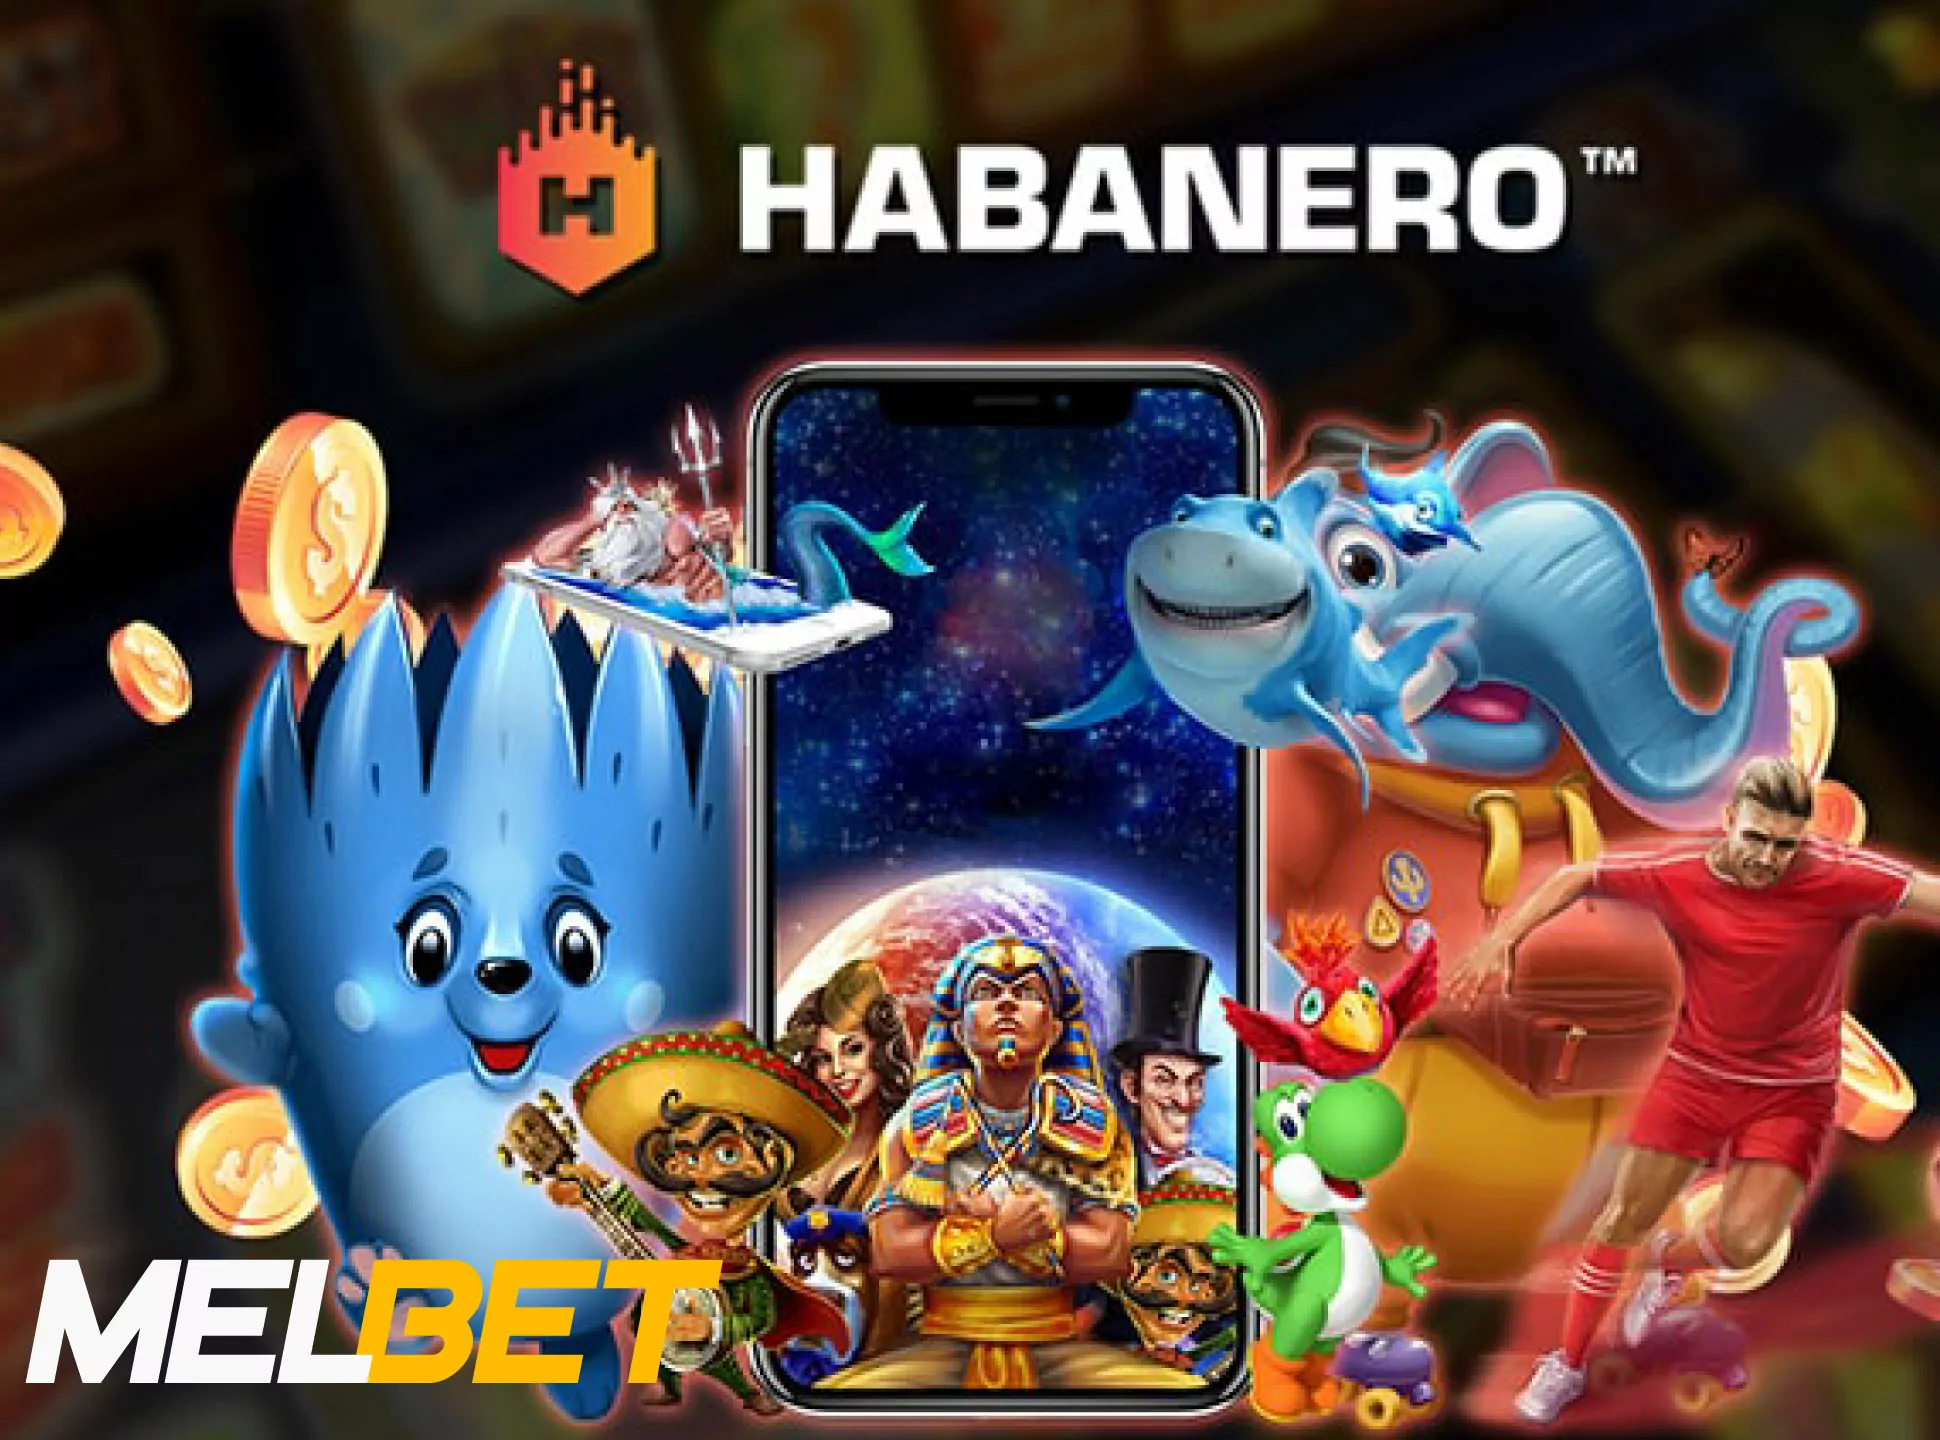 Make best winnings playing Habanero casino games.